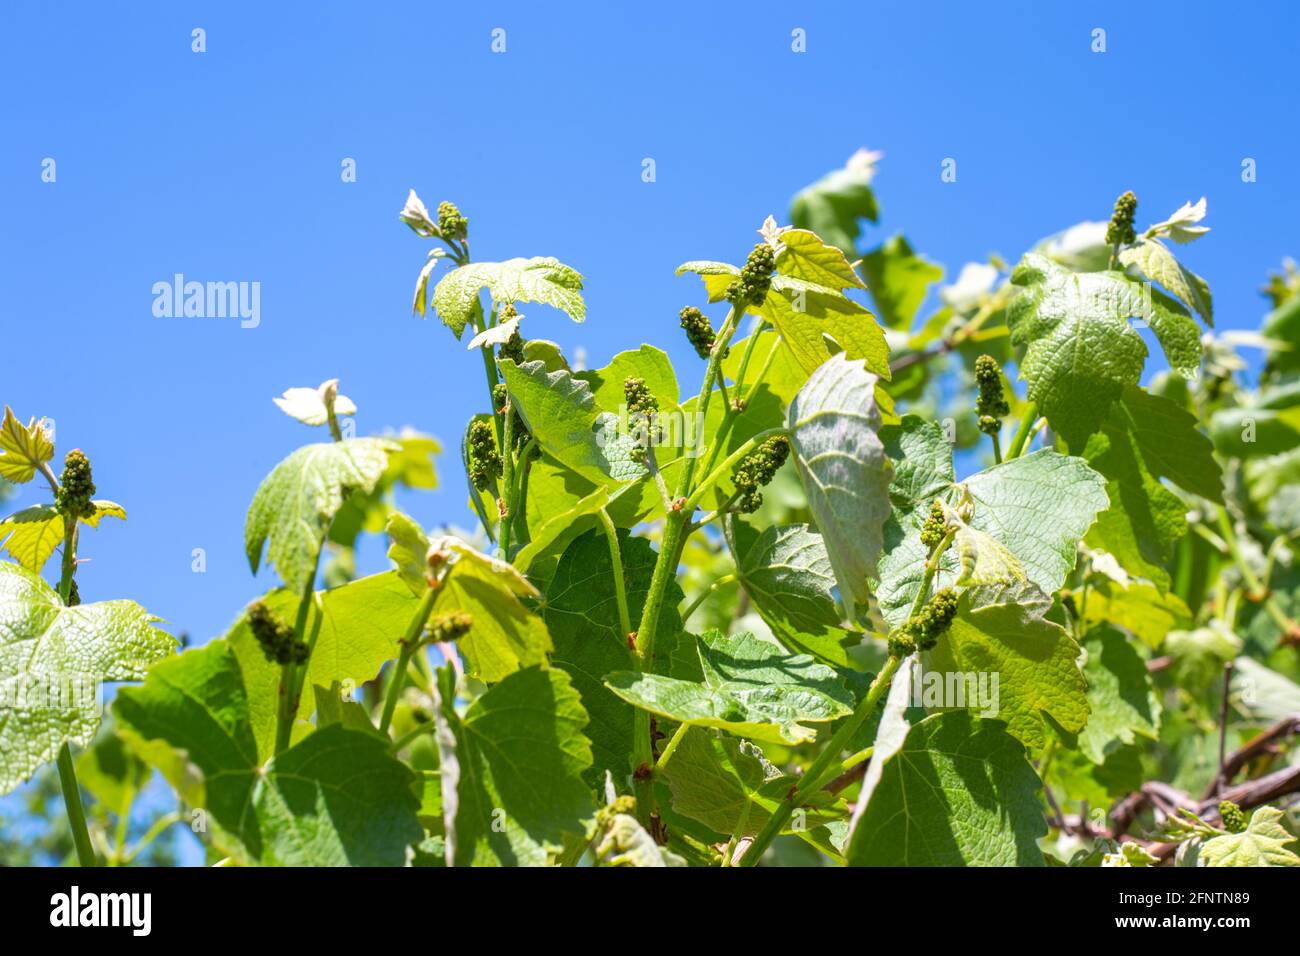 Giovani rami d'uva con boccioli e germogli verdi rigonfi. Periodi di vegetazione. Coltivazione e cura delle uve. Foto Stock